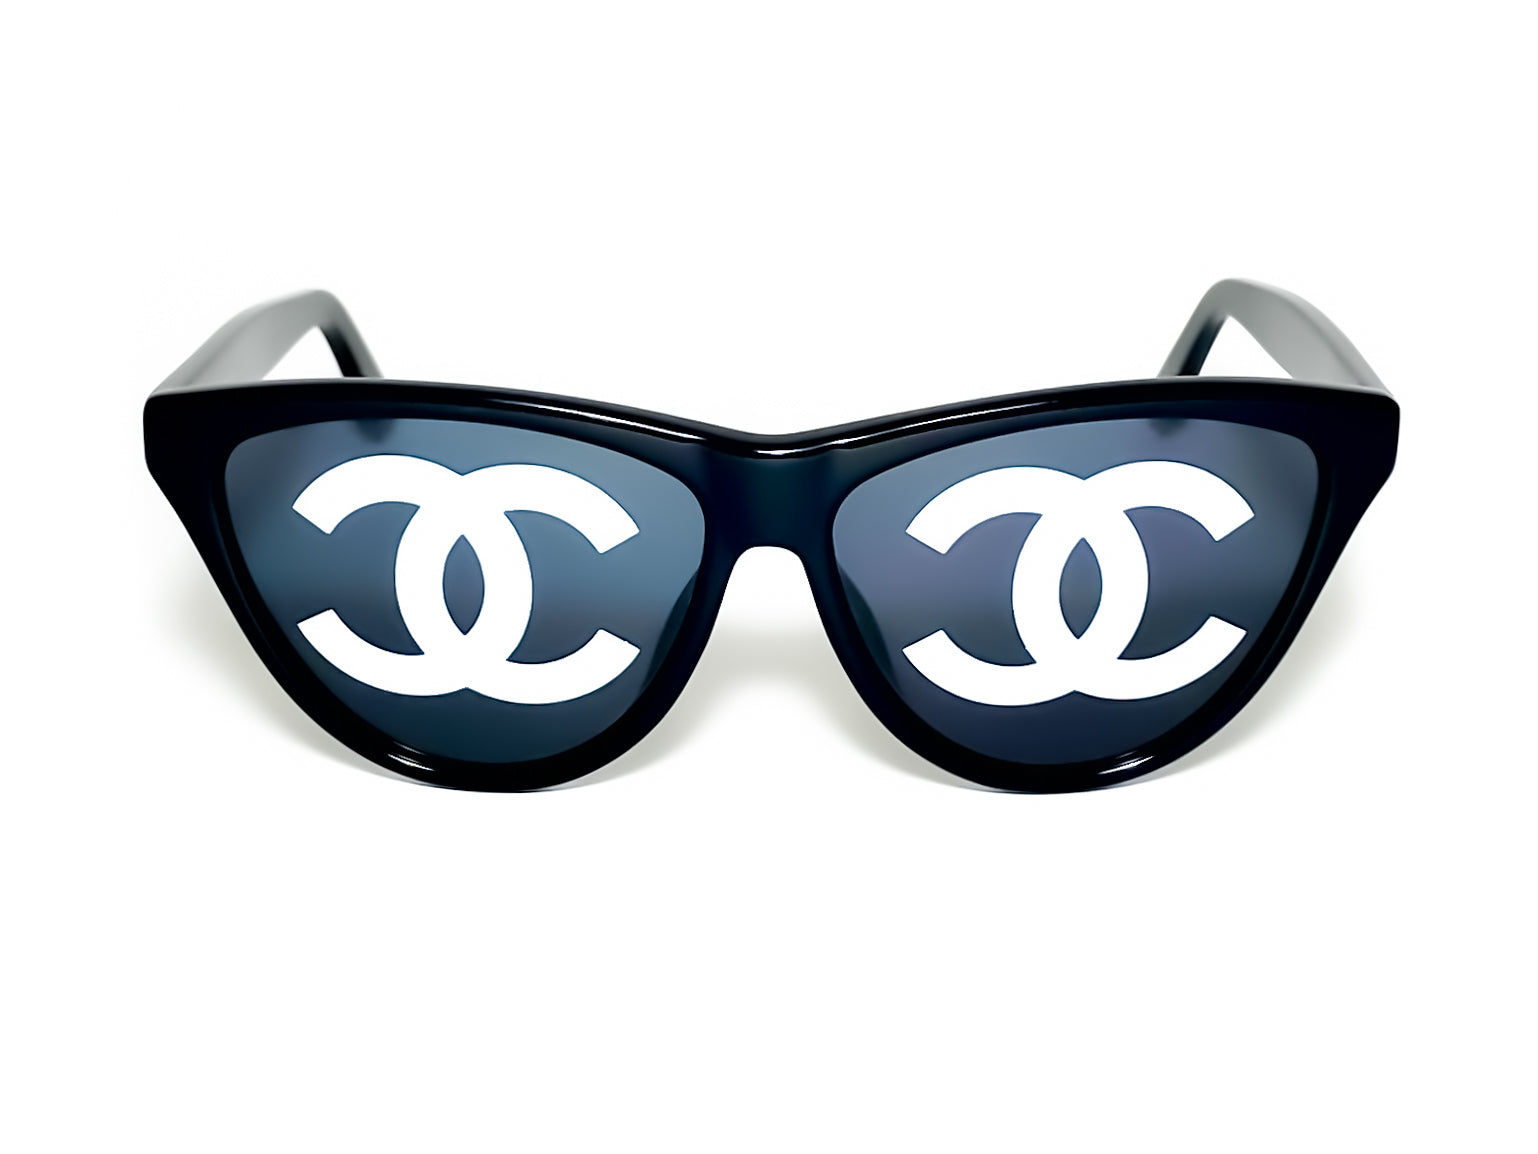 Chanel small sunglasses｜TikTok Search